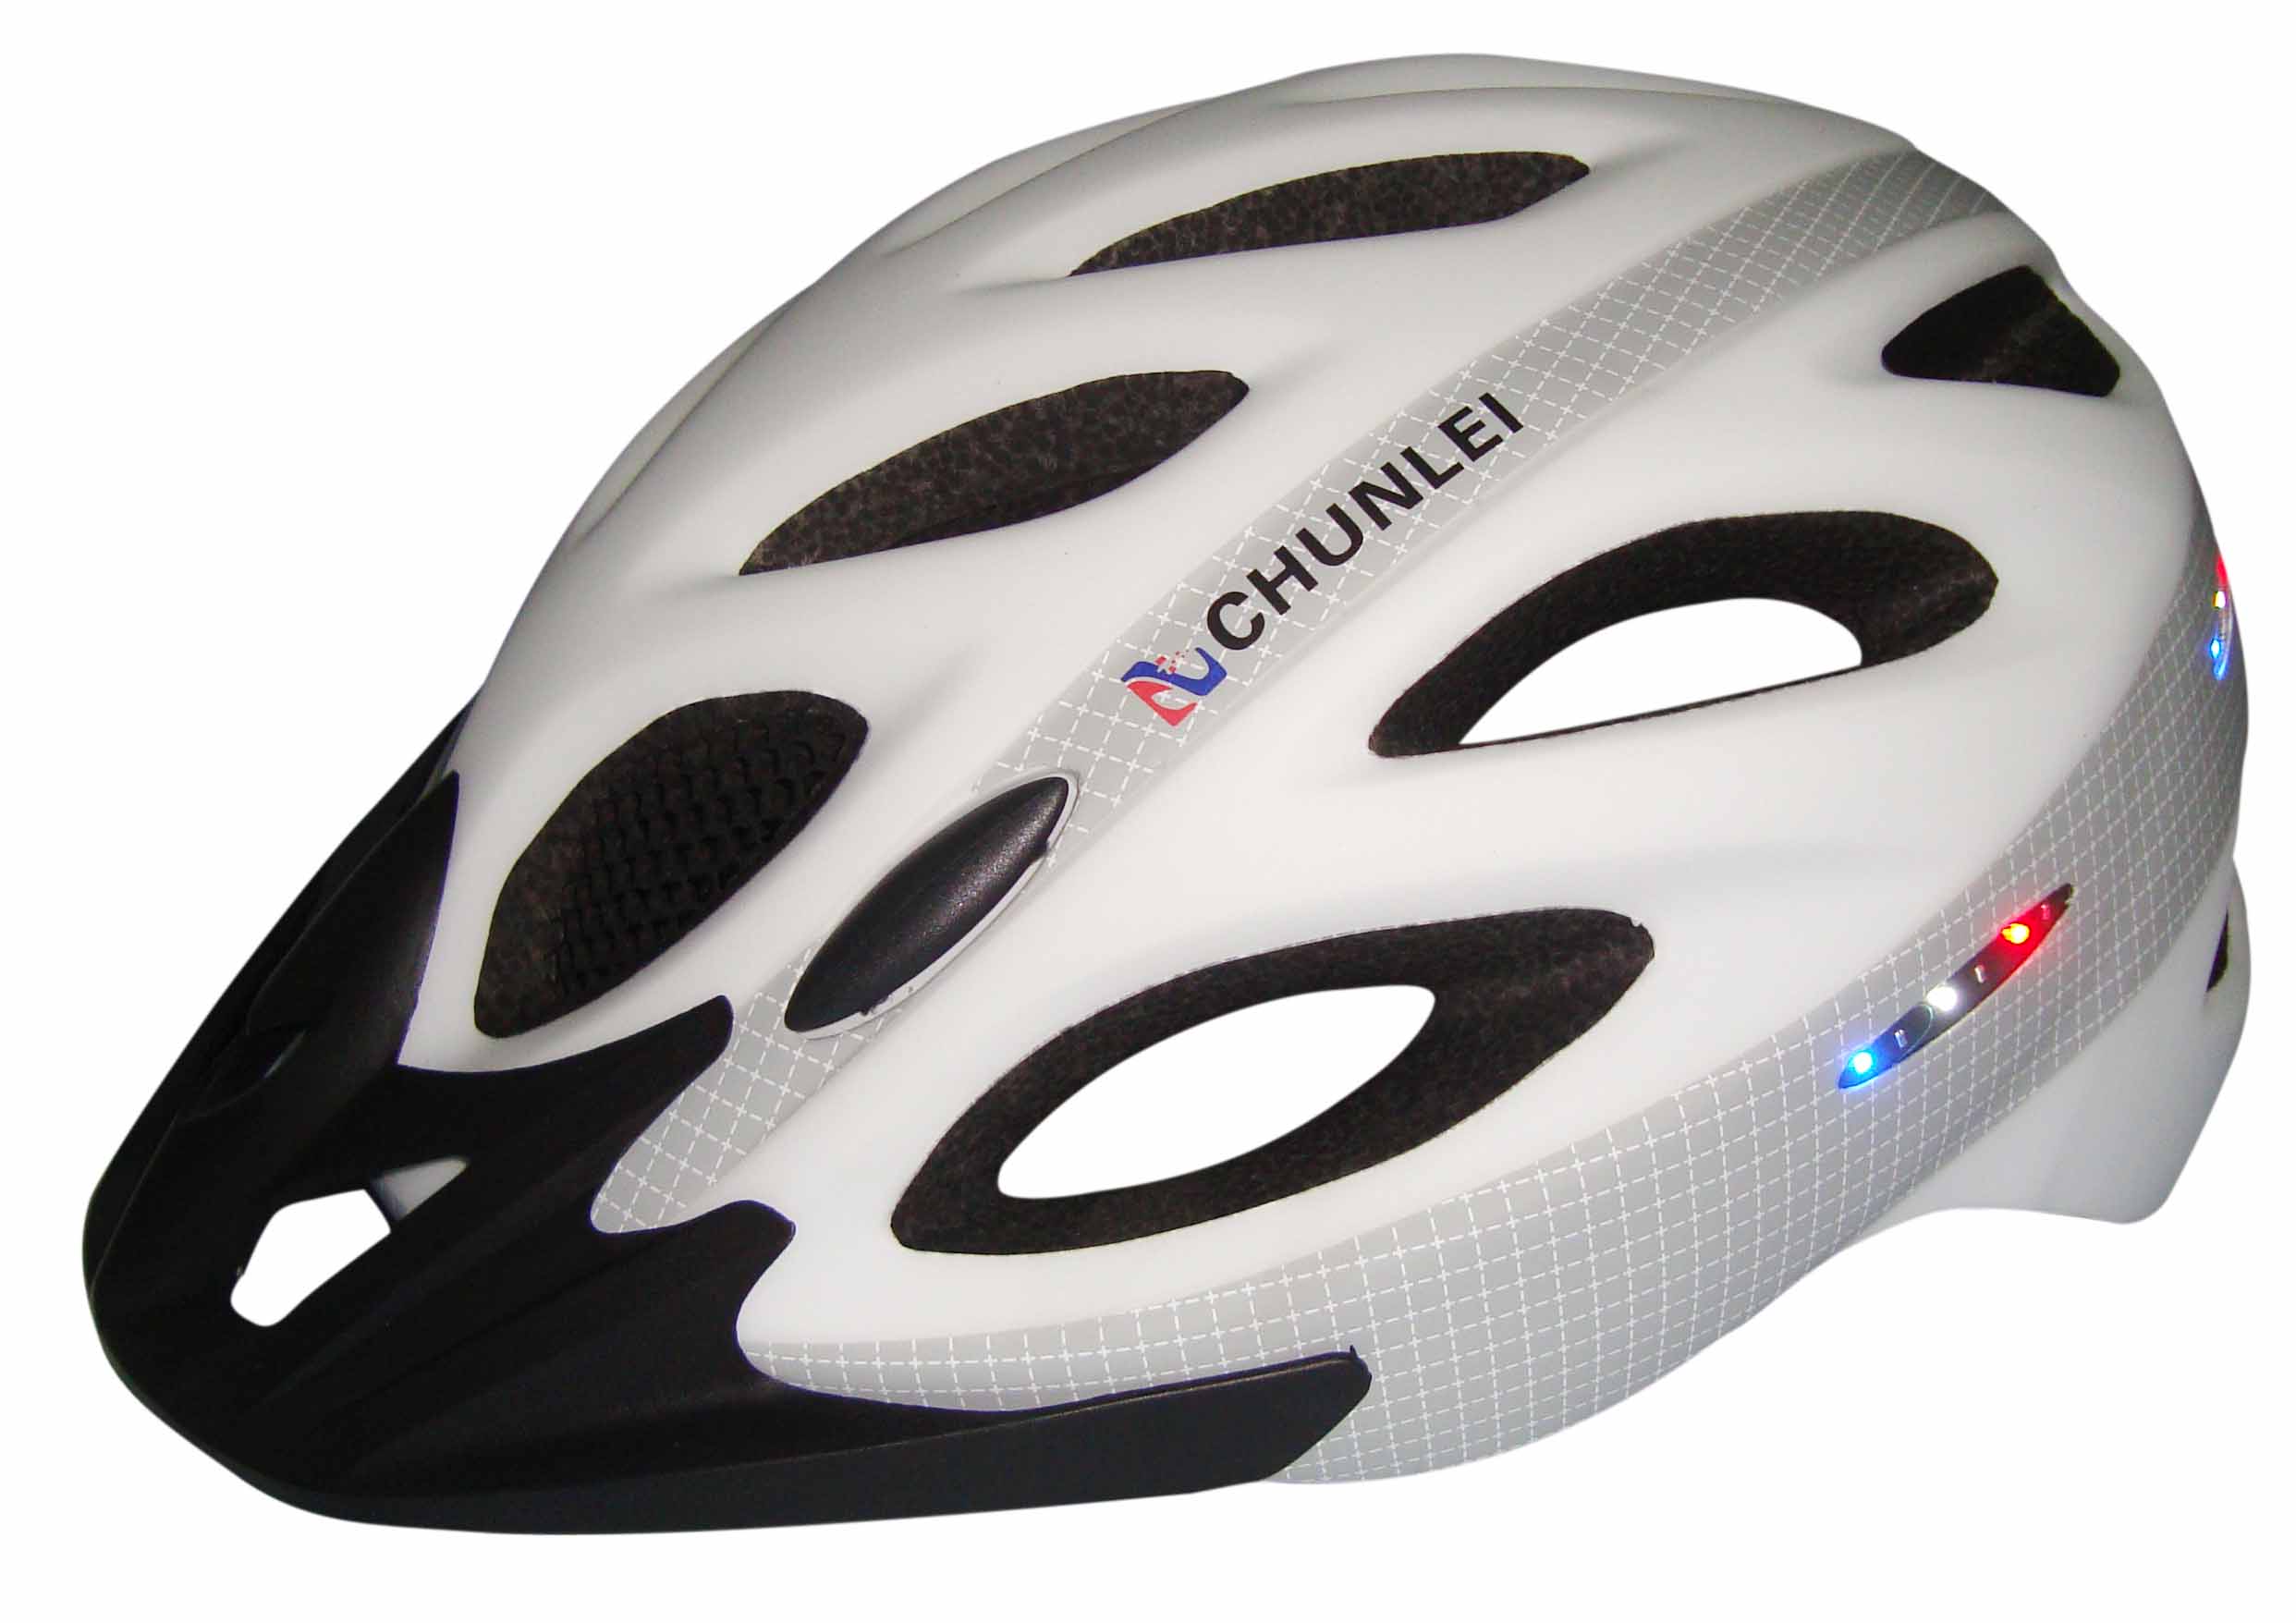 Montaje de casco de luz de la bicicleta, casco de bicicleta LED luces AU-L01